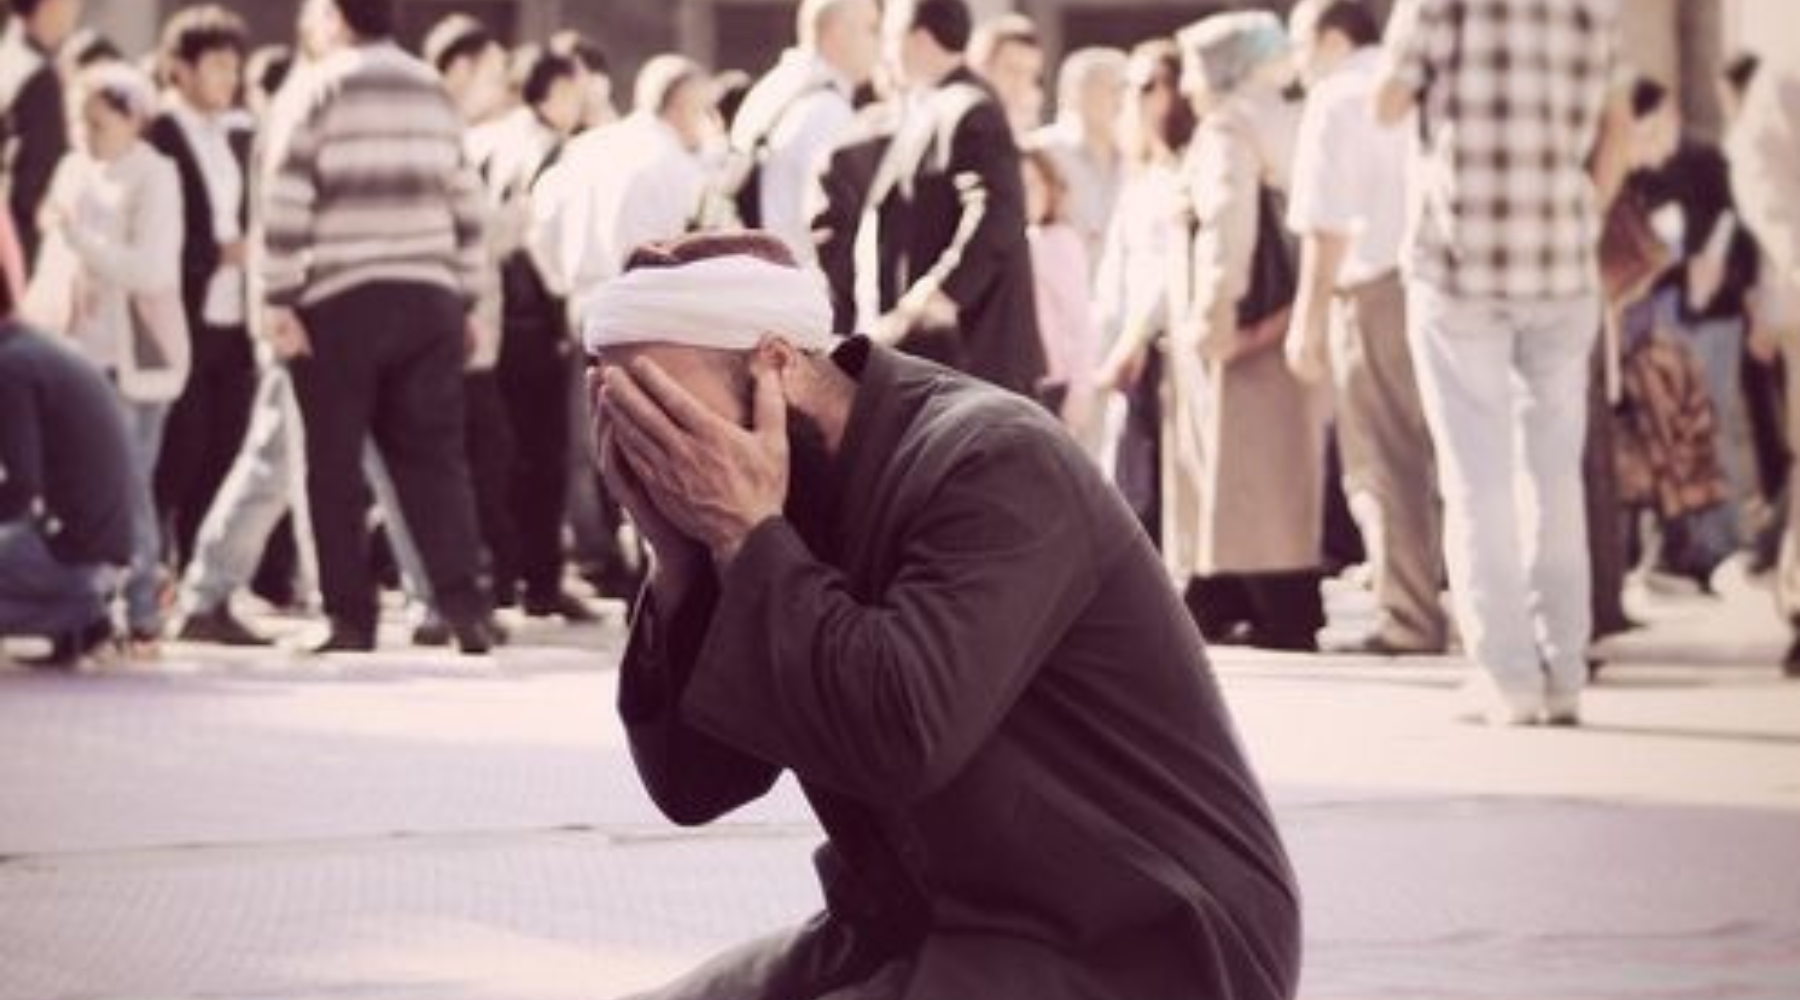 Jangan Menyerah & Bersedih, Lafalkan Doa Ini Saat Mengalami Kegagalan